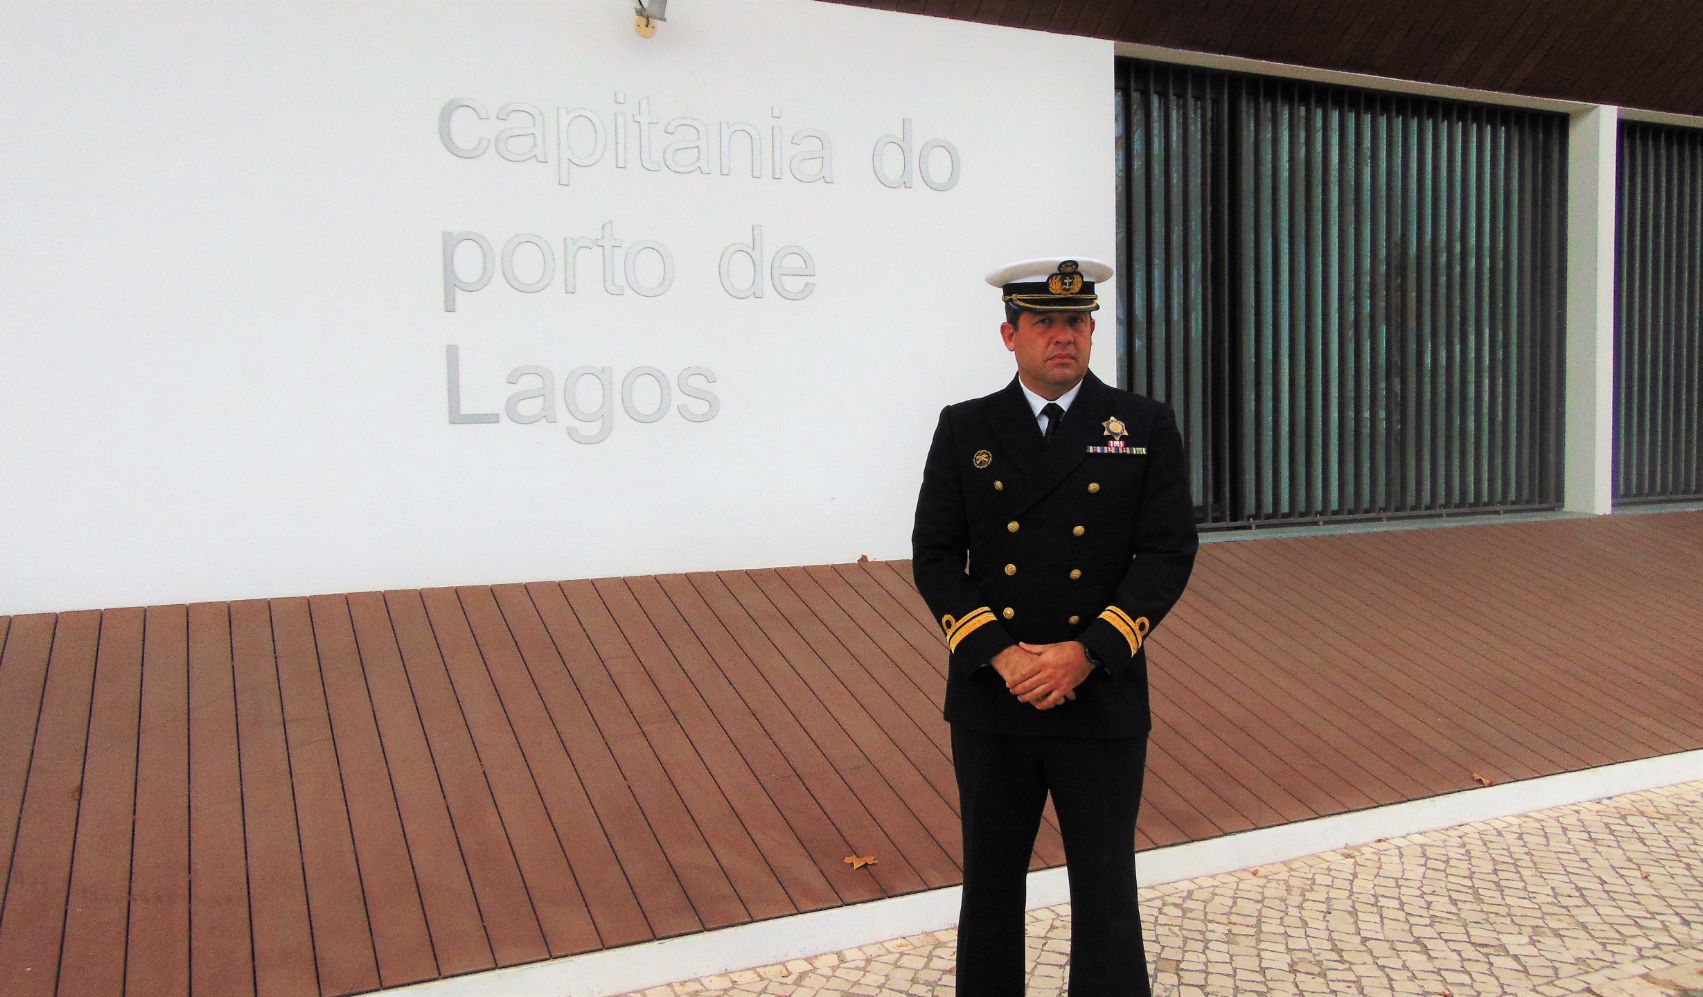 Comandante Pedro Fernandes da Palma, Capitão do Porto de Lagos